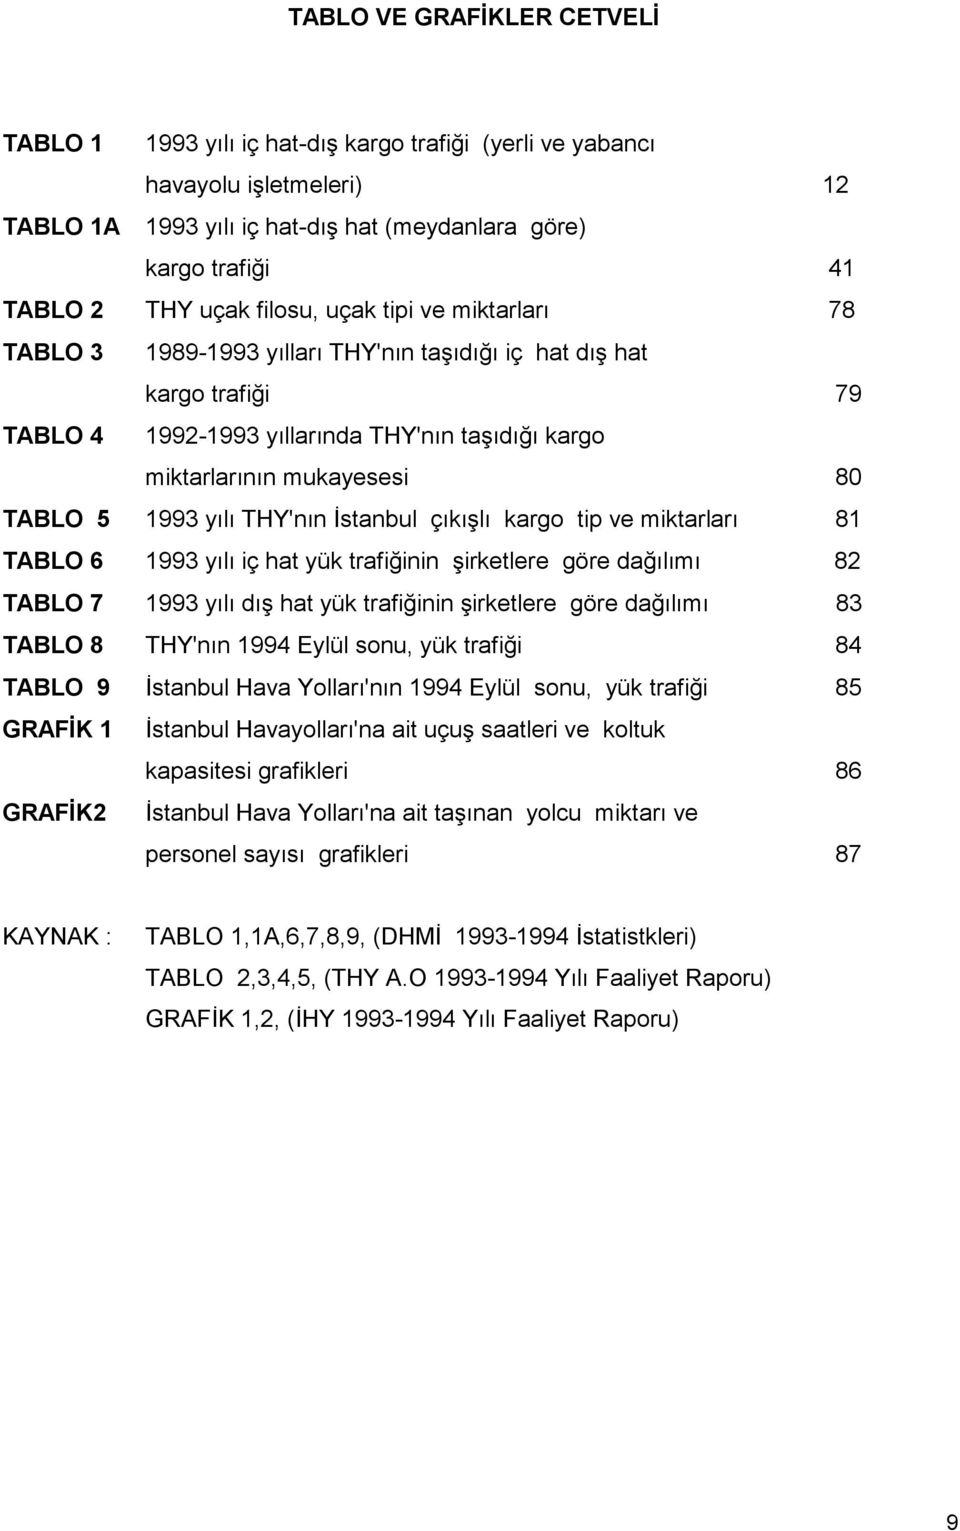 1993 yılı THY'nın Đstanbul çıkışlı kargo tip ve miktarları 81 TABLO 6 1993 yılı iç hat yük trafiğinin şirketlere göre dağılımı 82 TABLO 7 1993 yılı dış hat yük trafiğinin şirketlere göre dağılımı 83